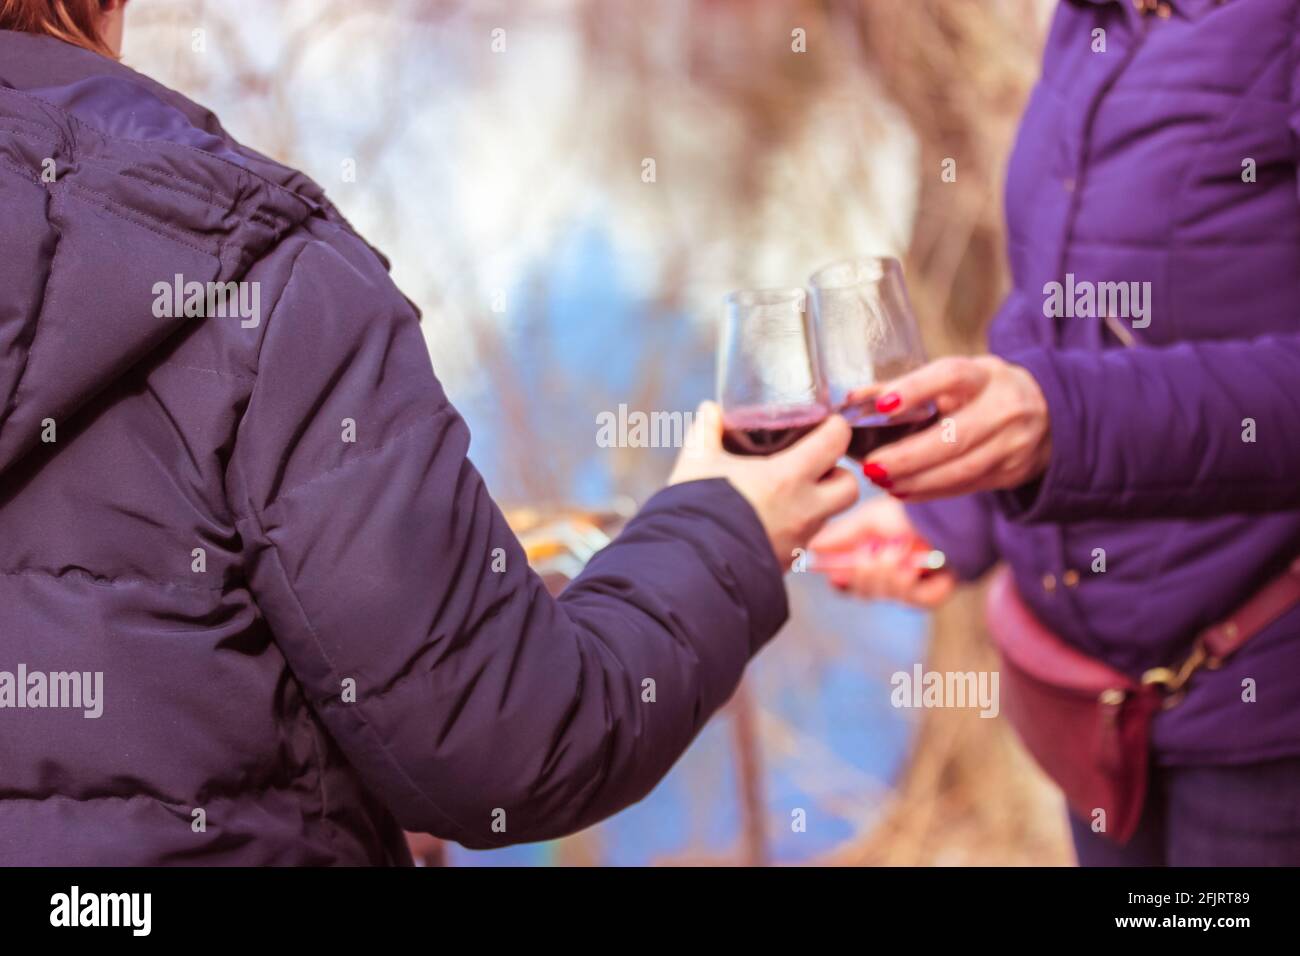 Klirrende Weingläser. Zwei unkenntliche Frauen hoben Gläser mit Rotwein und rösten. Erholung in der Natur im Frühling. Freunde trinken Alkoh Stockfoto